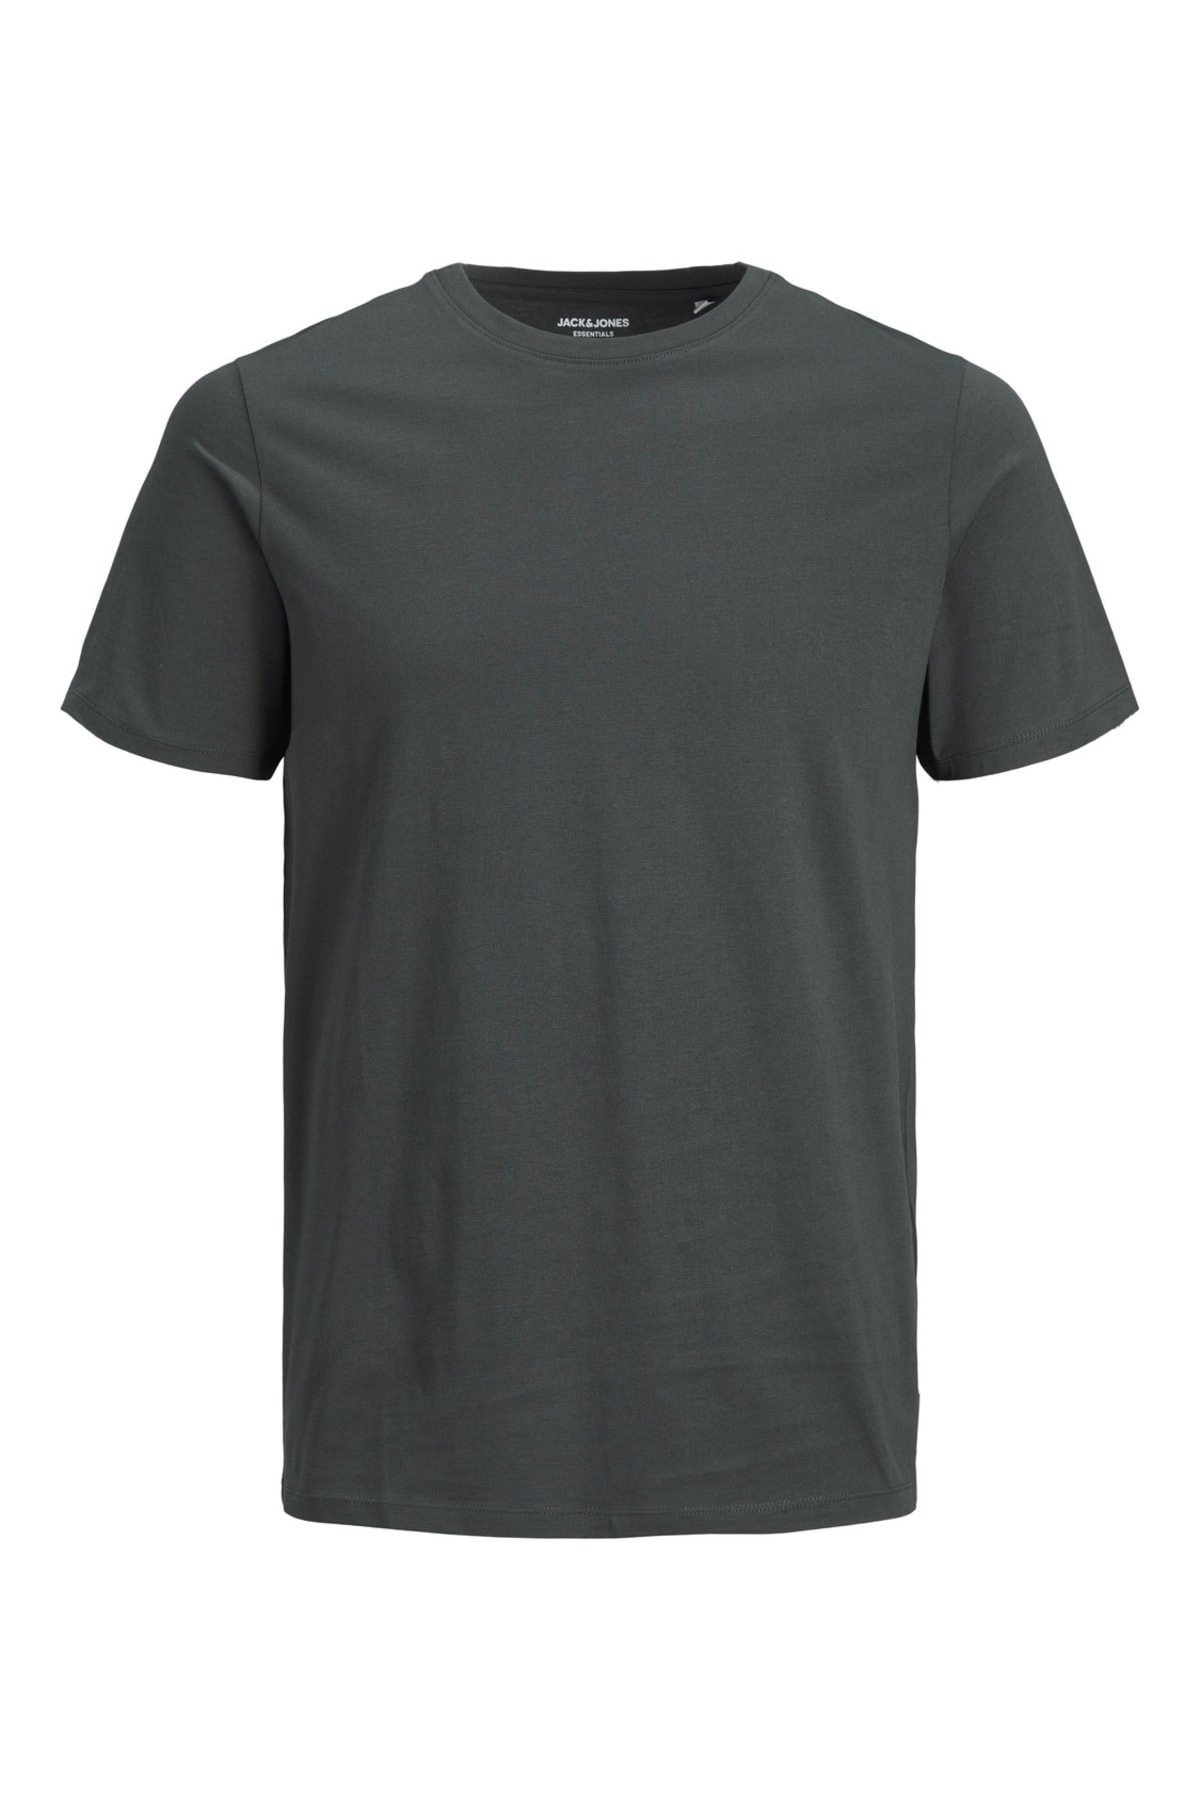 Jack & Jones JJEORGANIC Basic Erkek T-Shirt 12156101 - Asphalt